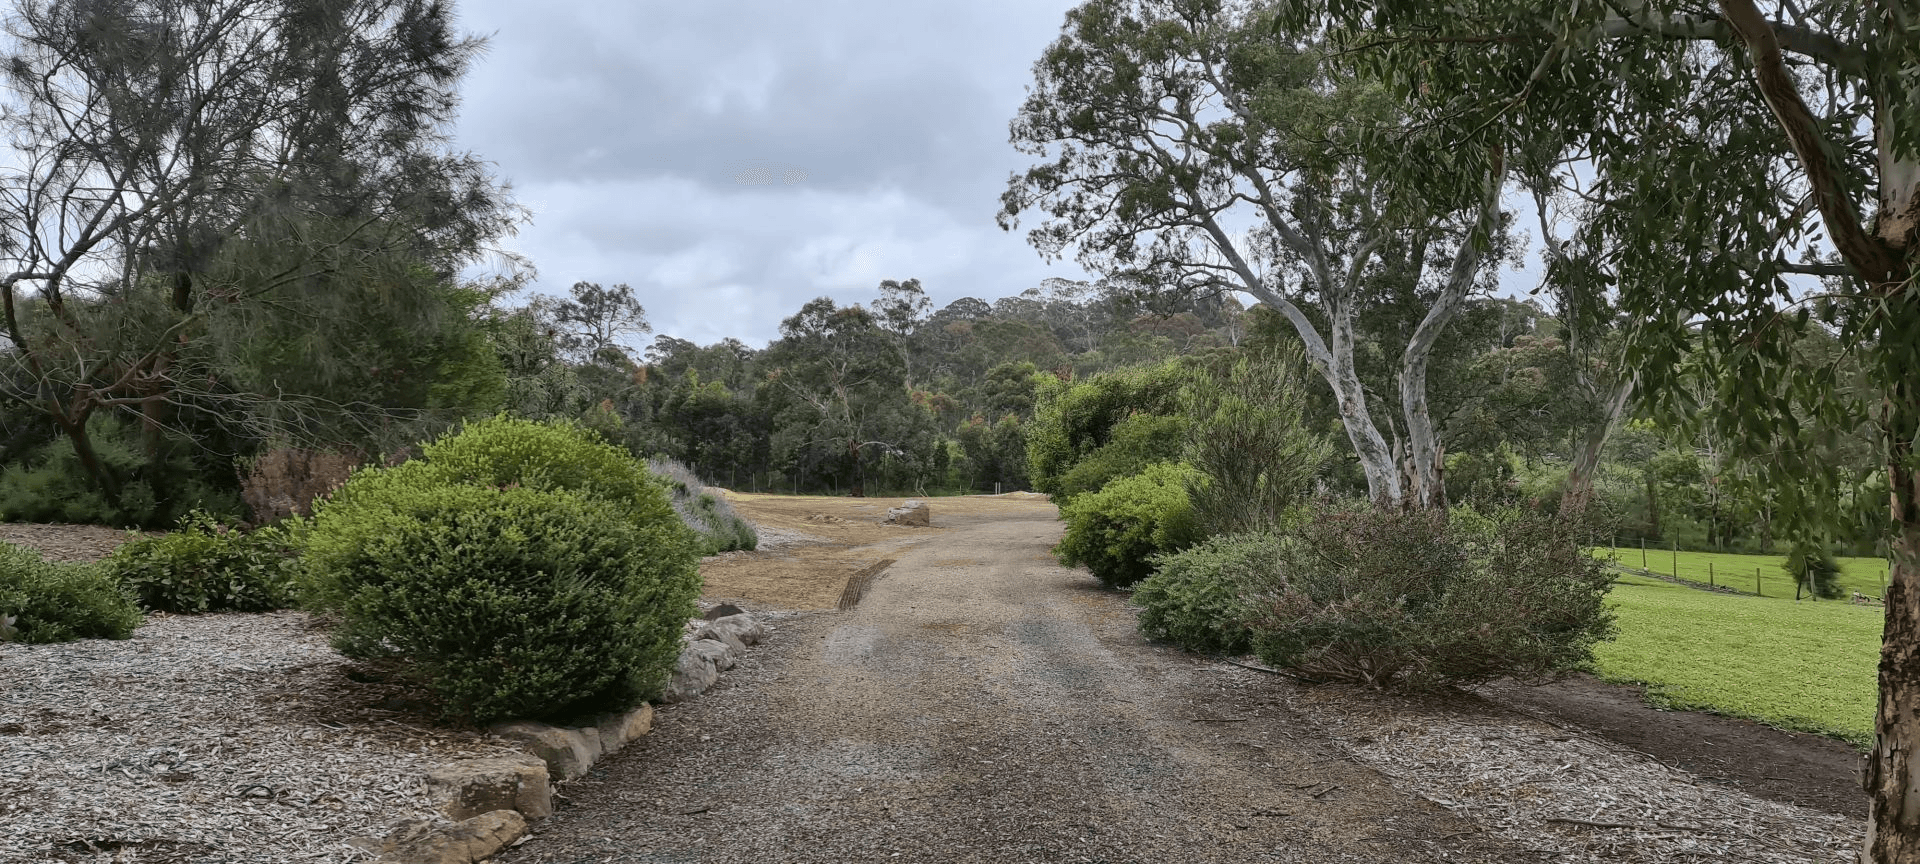 22 Yaktanga Way, Mount Barker, SA 5251